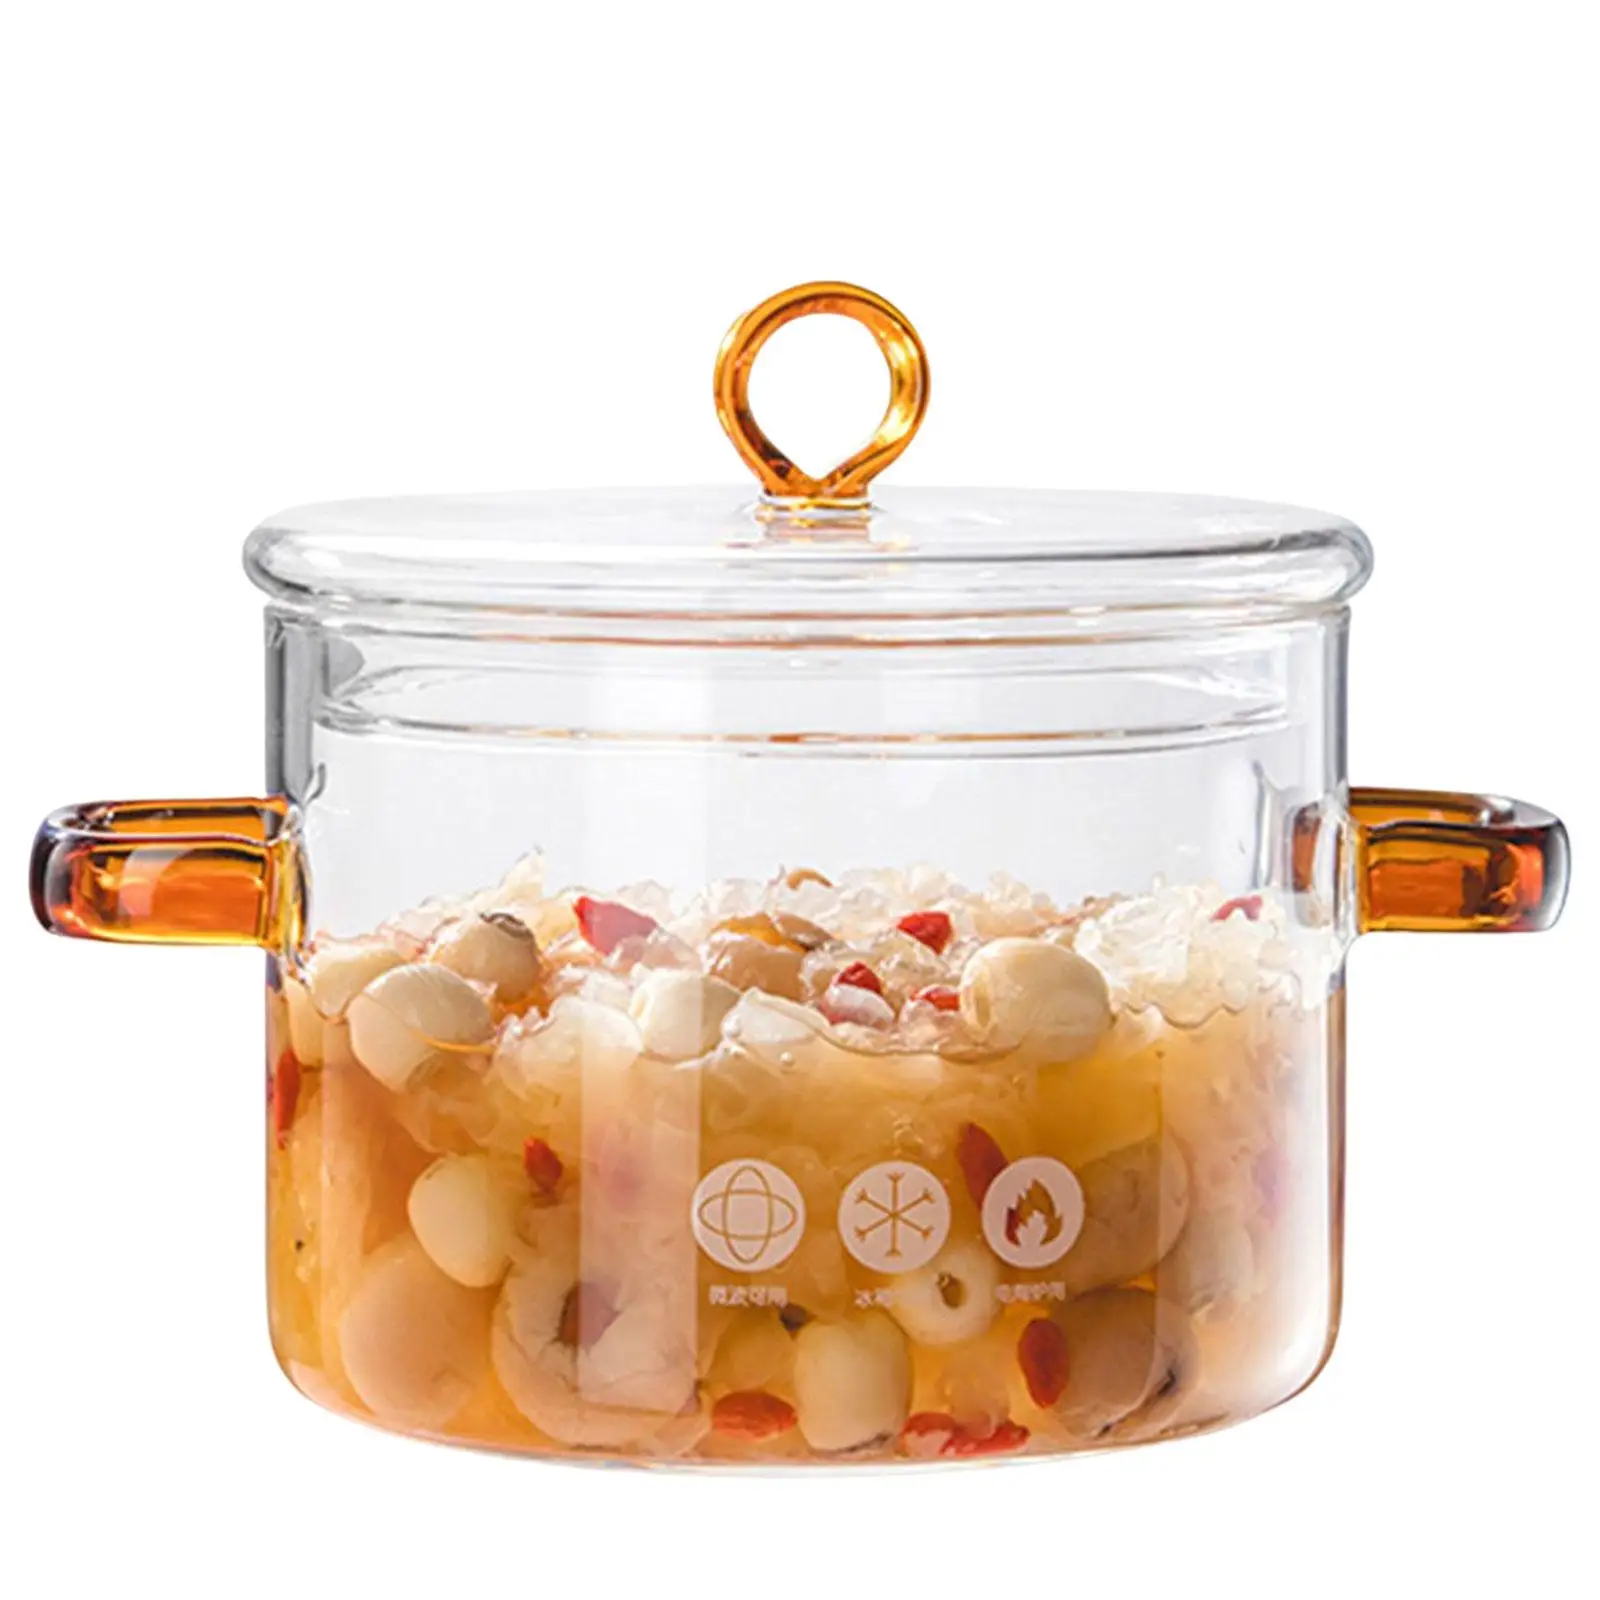 Heat Resistant Soup Pot Handmade Mini Size Cookware with Lid Glass Cooking Pot Milk Sauce Hot Pot for Soup Milk Noodles